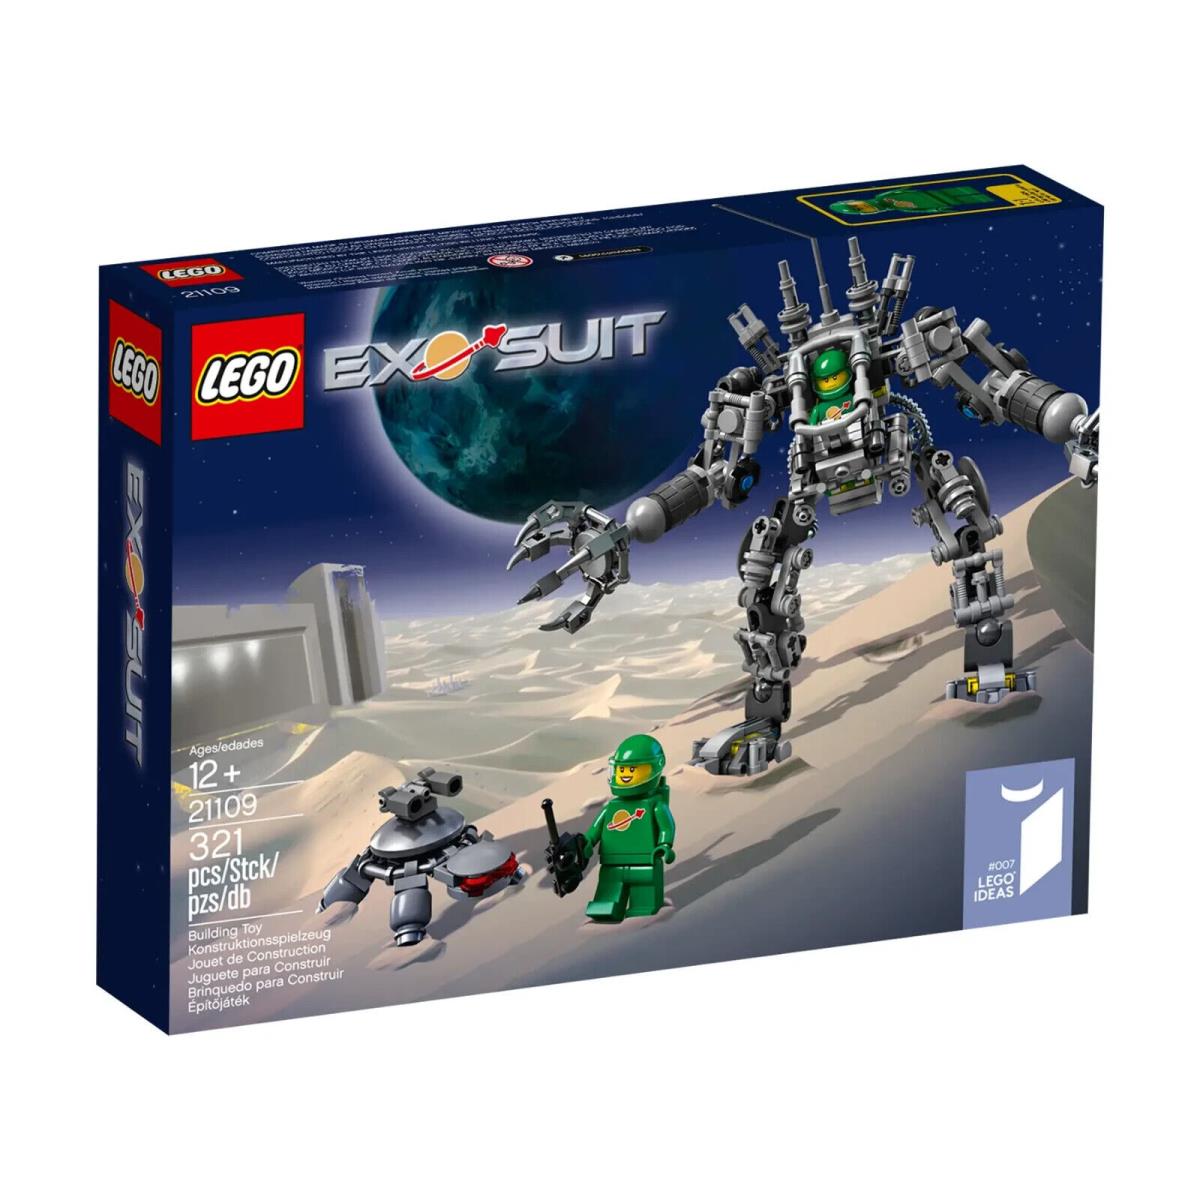 Lego Ideas Cuusoo Exo Suit 21109 - Rare Htf IN Box